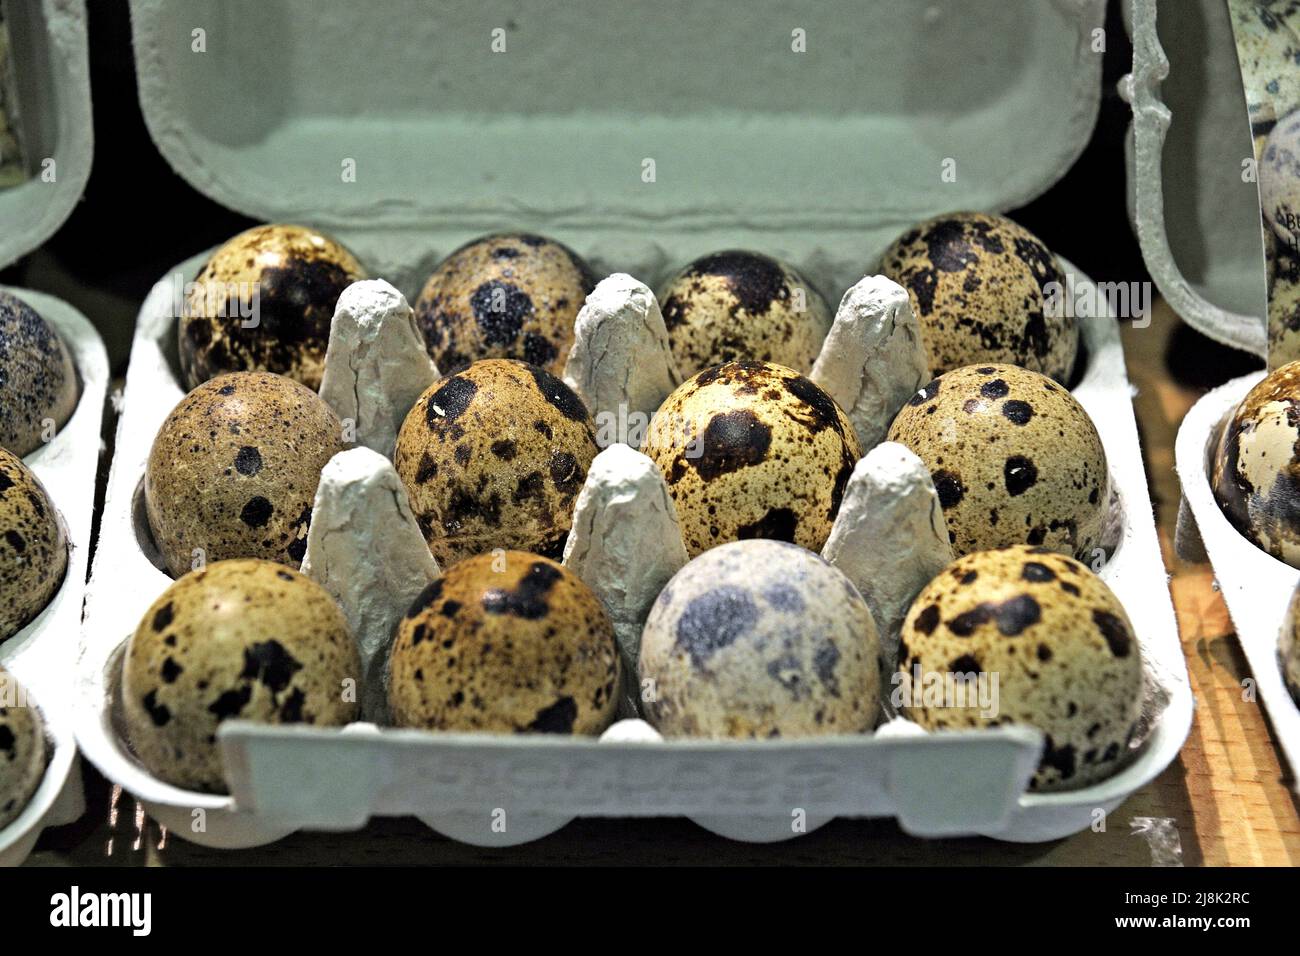 common quail (Coturnix coturnix), fresh quail's eggs for sale Stock Photo